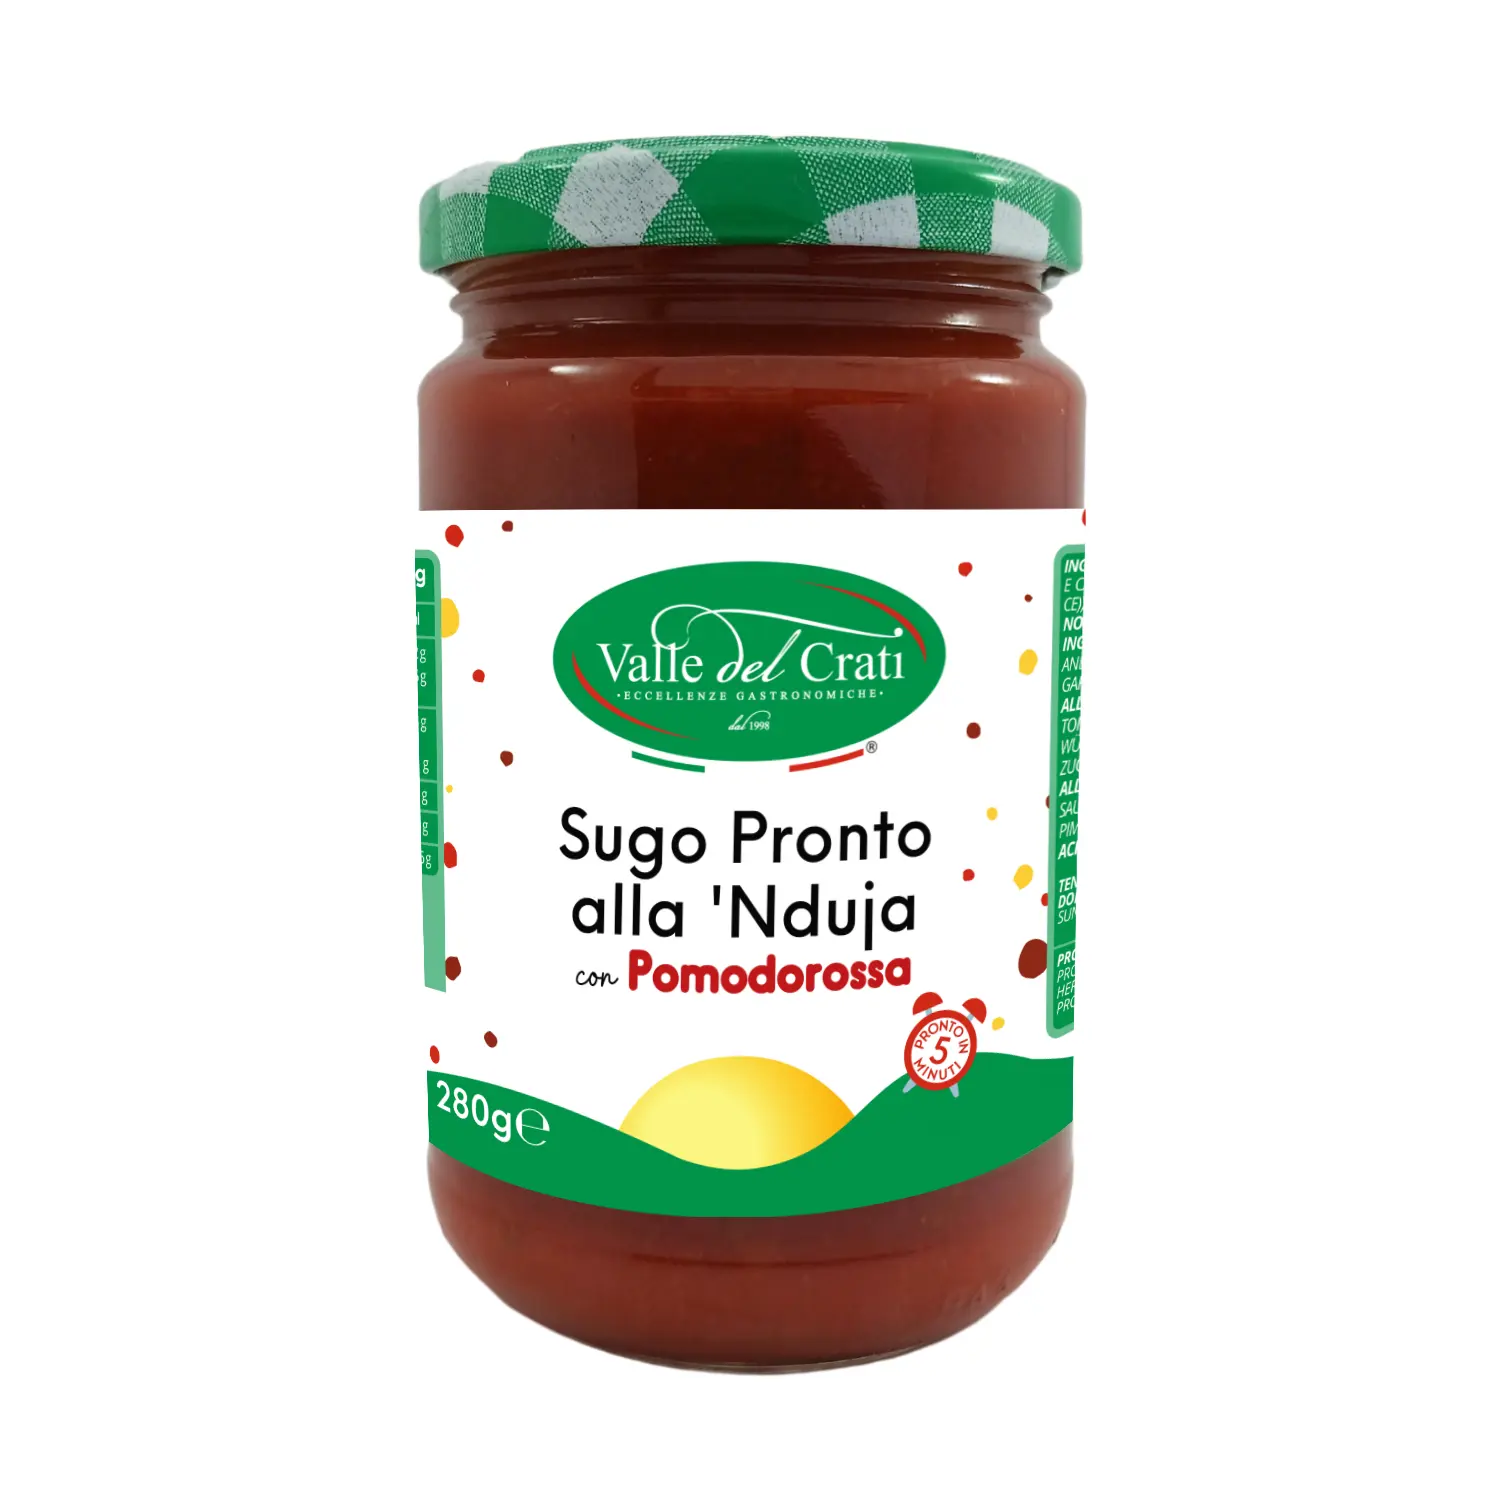 Calabrian Nduja الطماطم صنع في إيطاليا صلصة ميسون تعليب البرطمانات سهلة مفتوحة الطماطم Nduja لصق حار رائحة مع HACCP شهادة